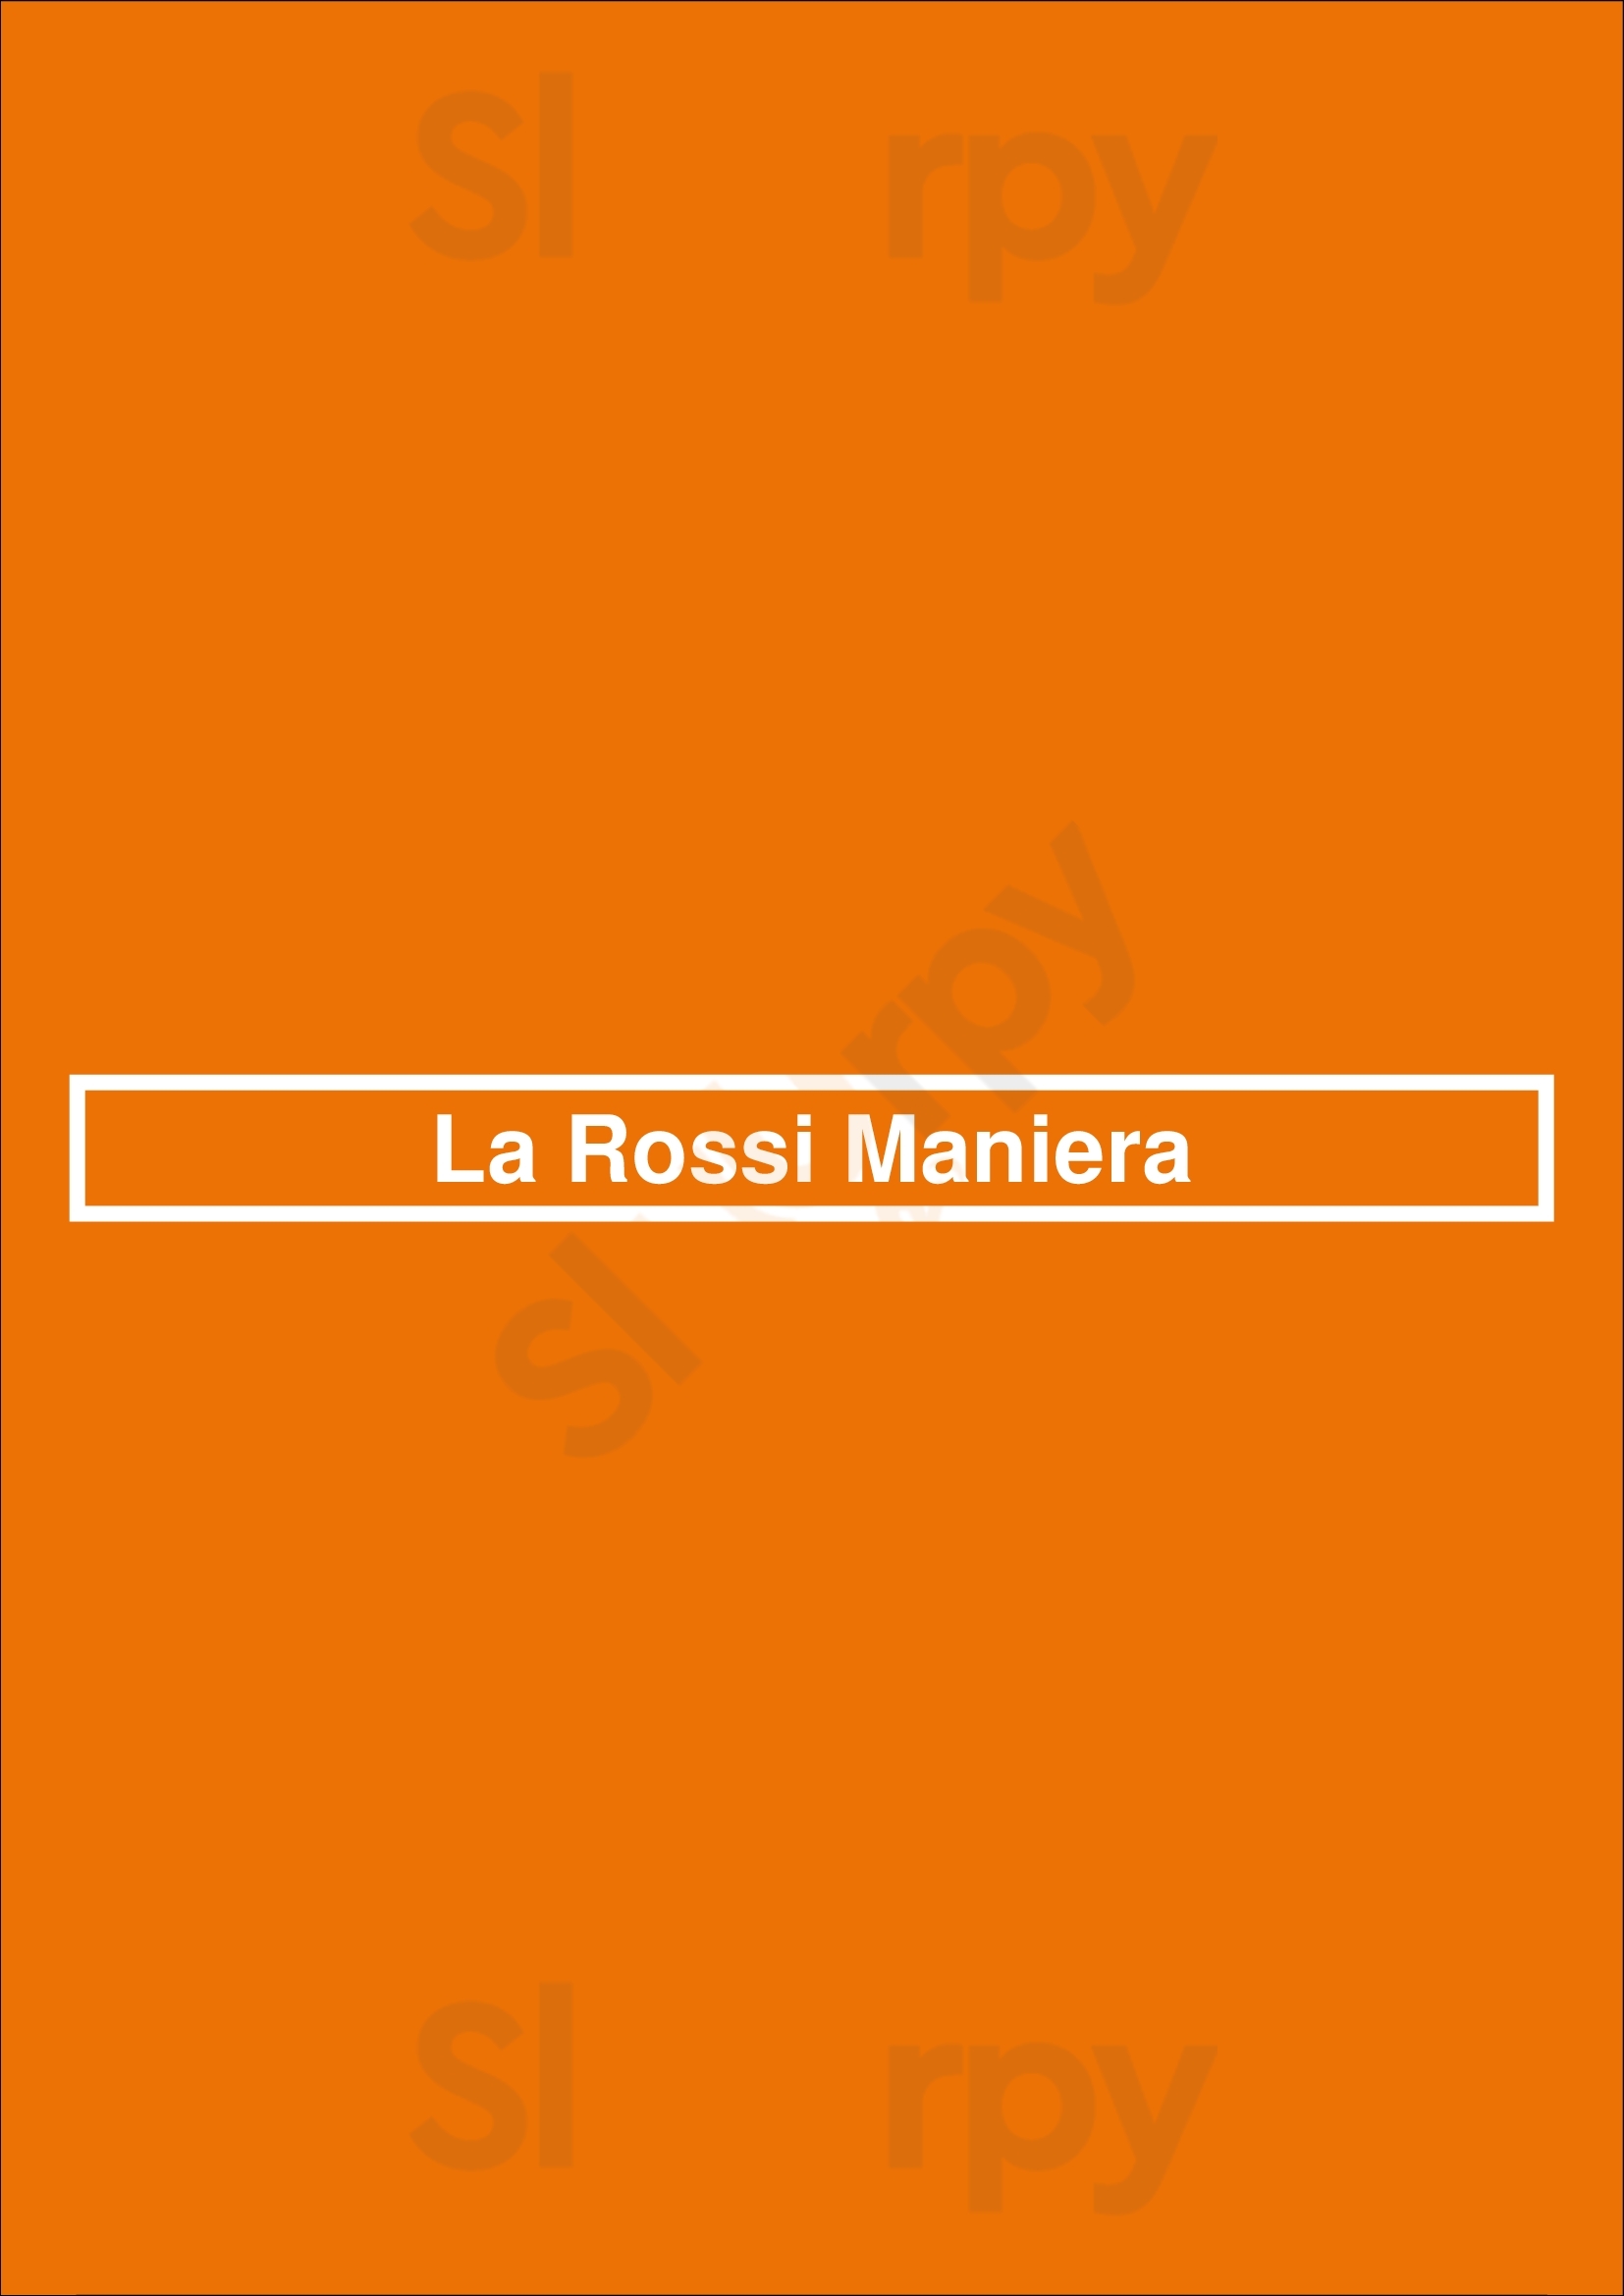 La Rossi Maniera Buenos Aires Menu - 1